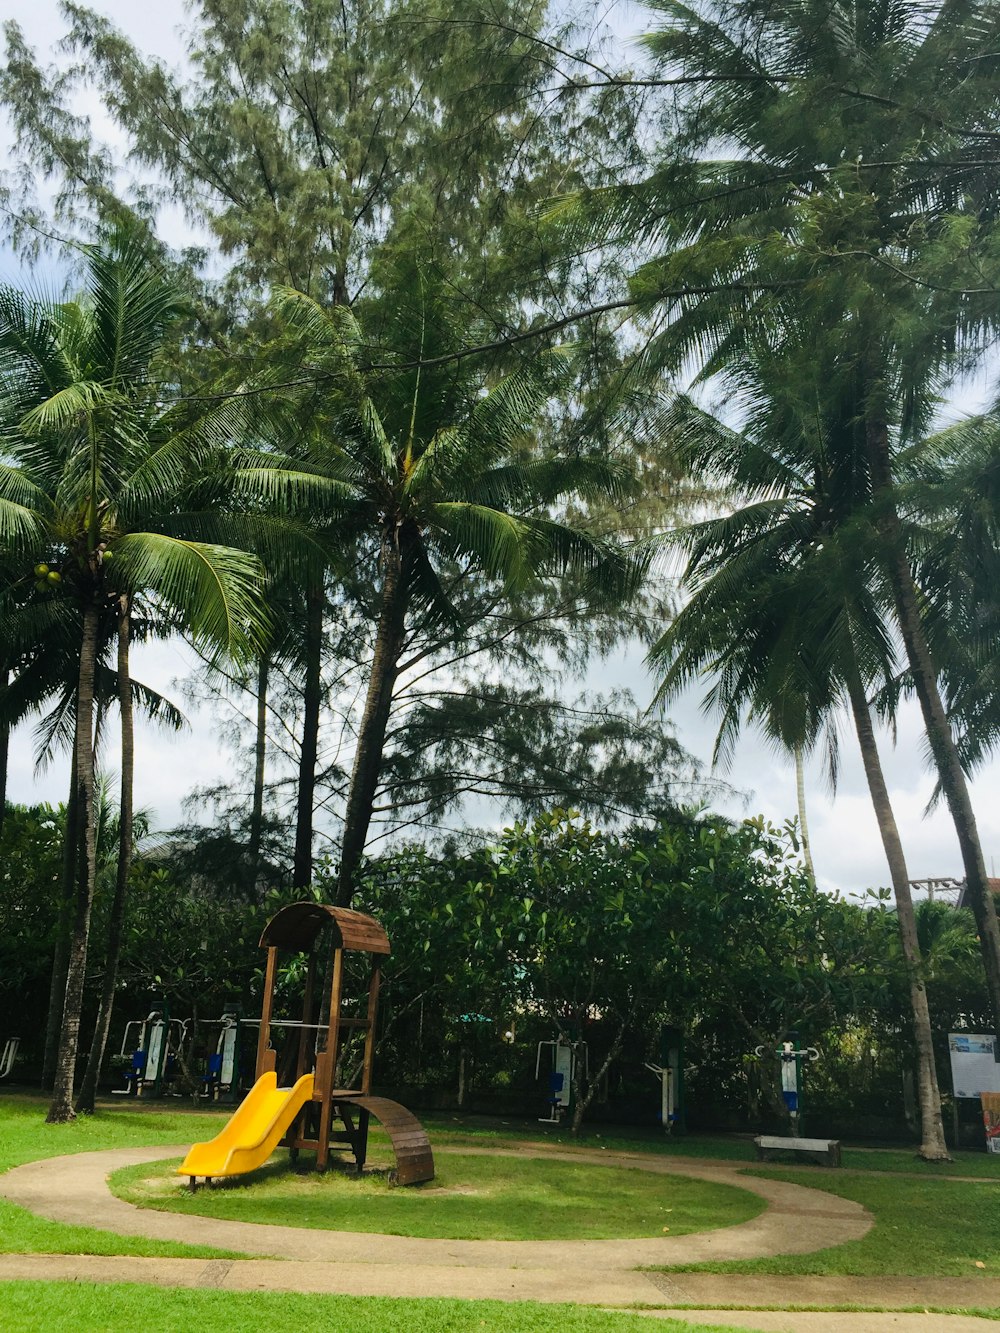 Eine gelbe Rutsche in einem Park